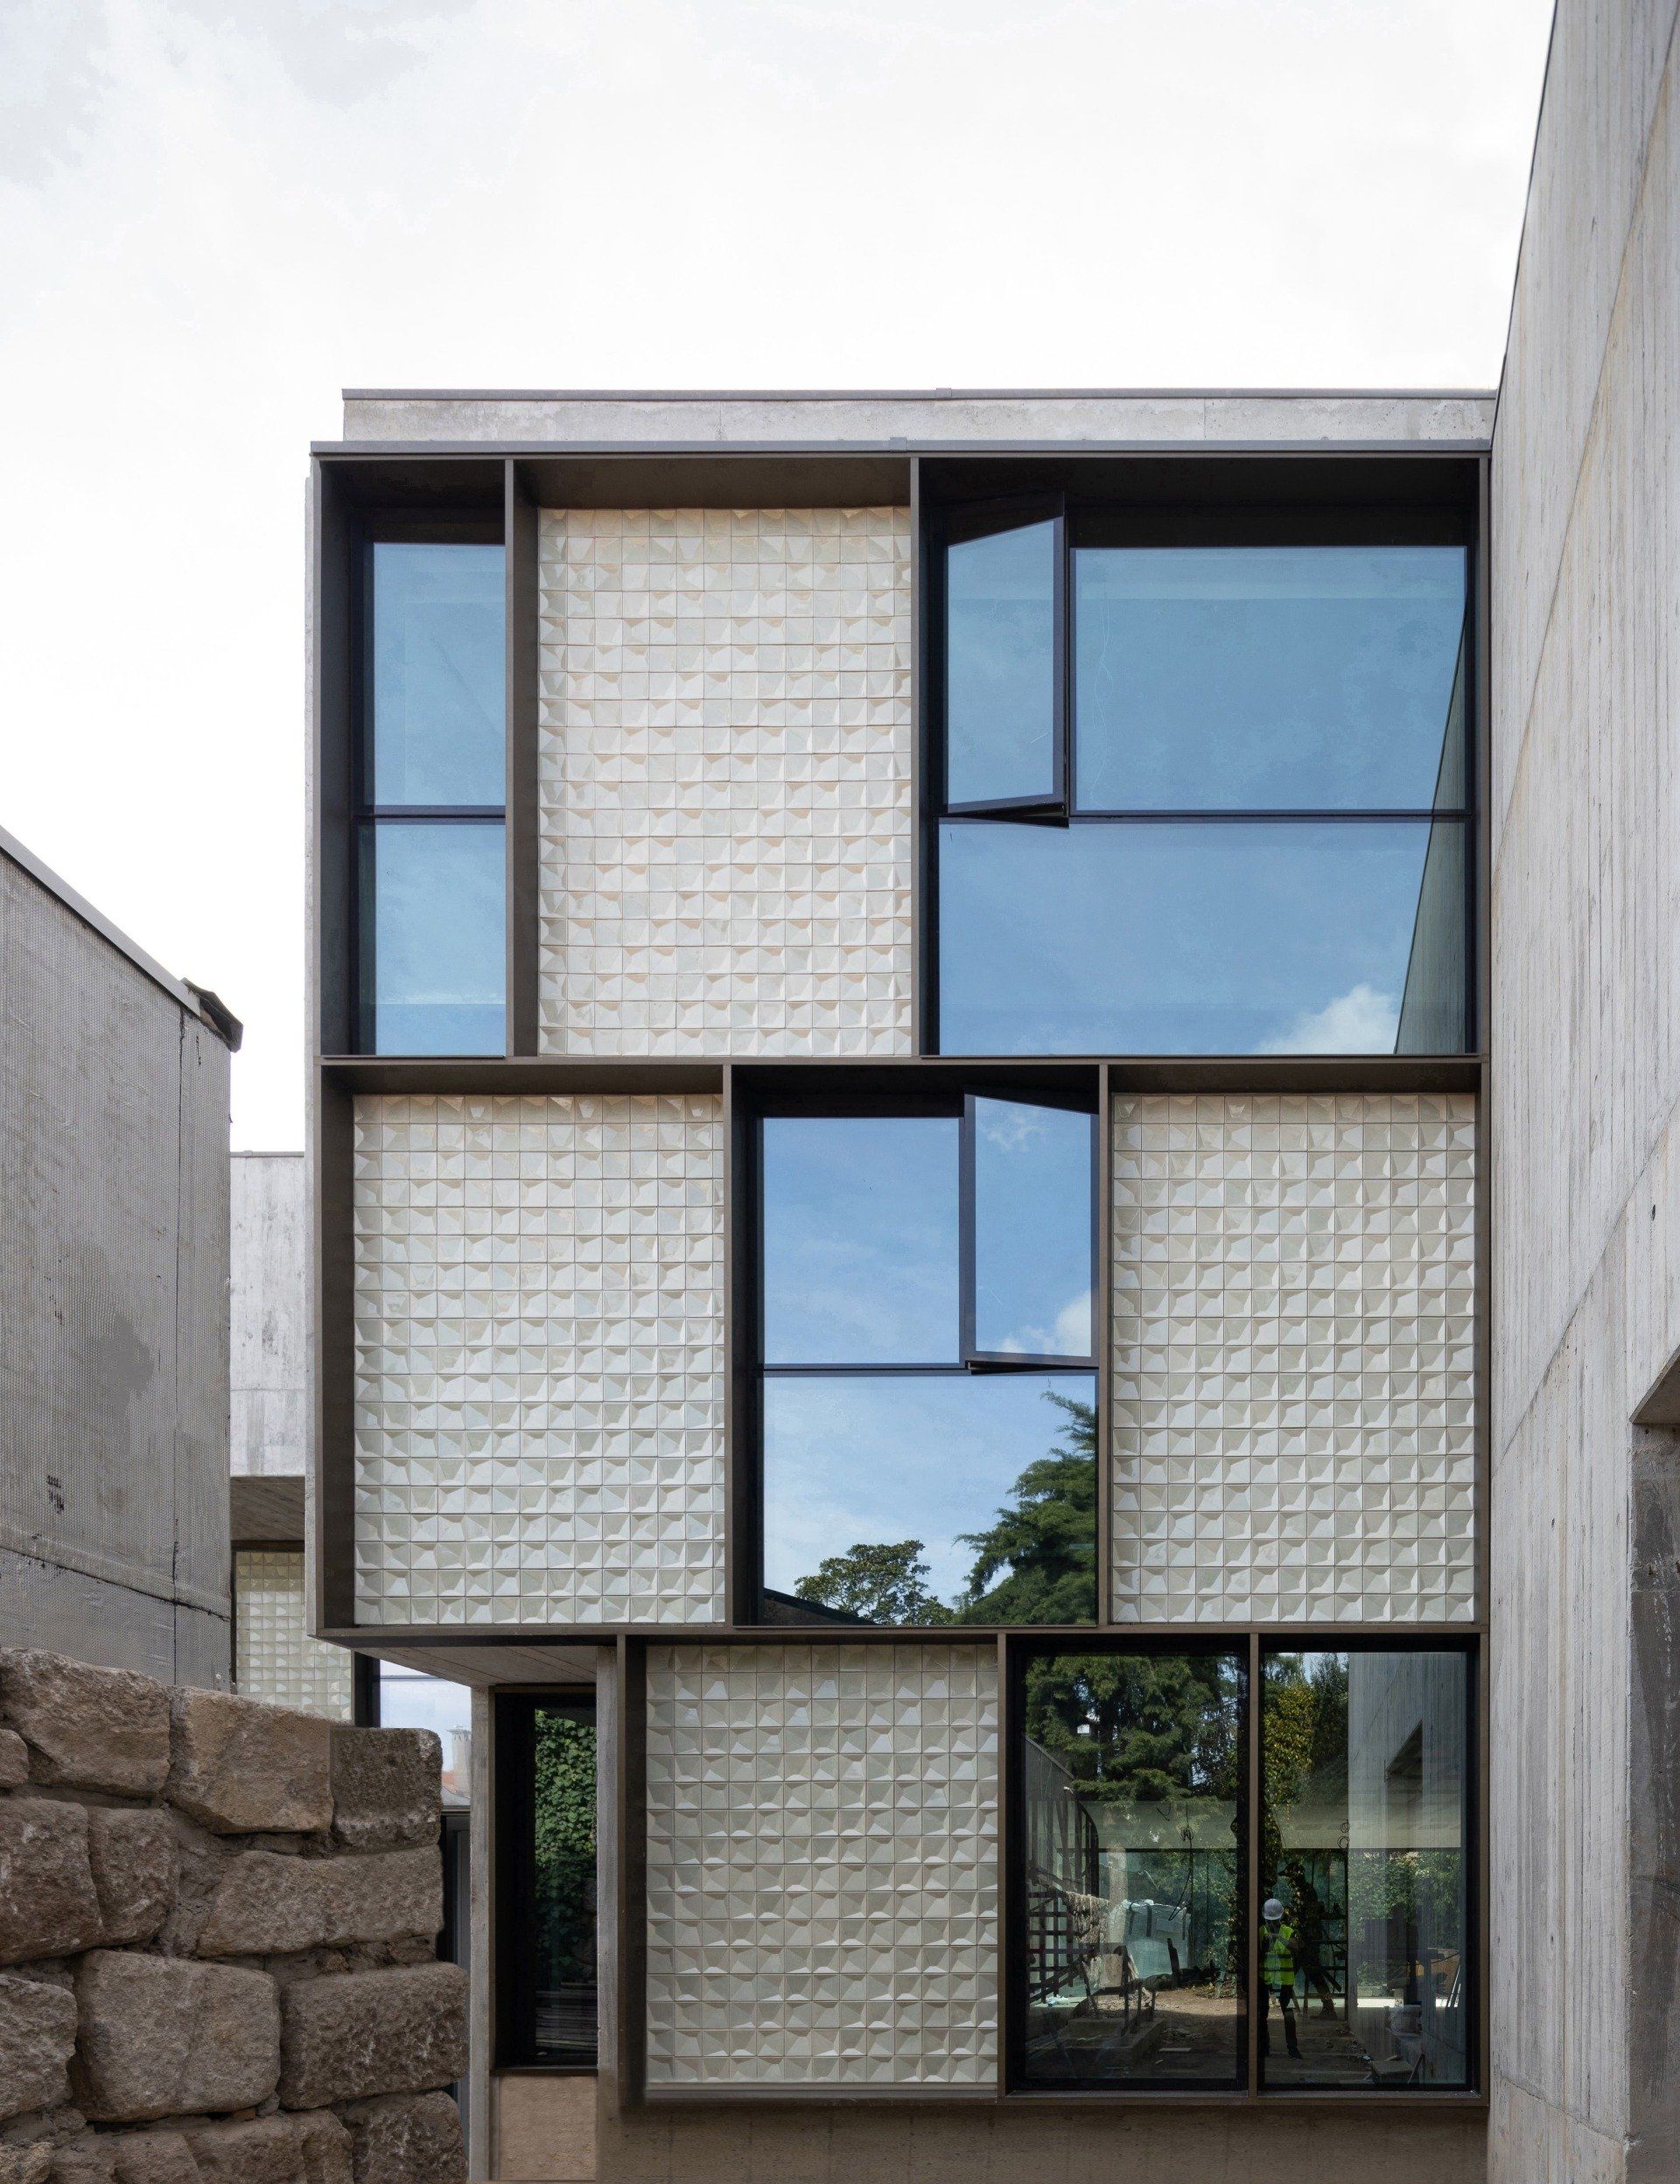 Modern architectural masterpiece with minimalist window frames